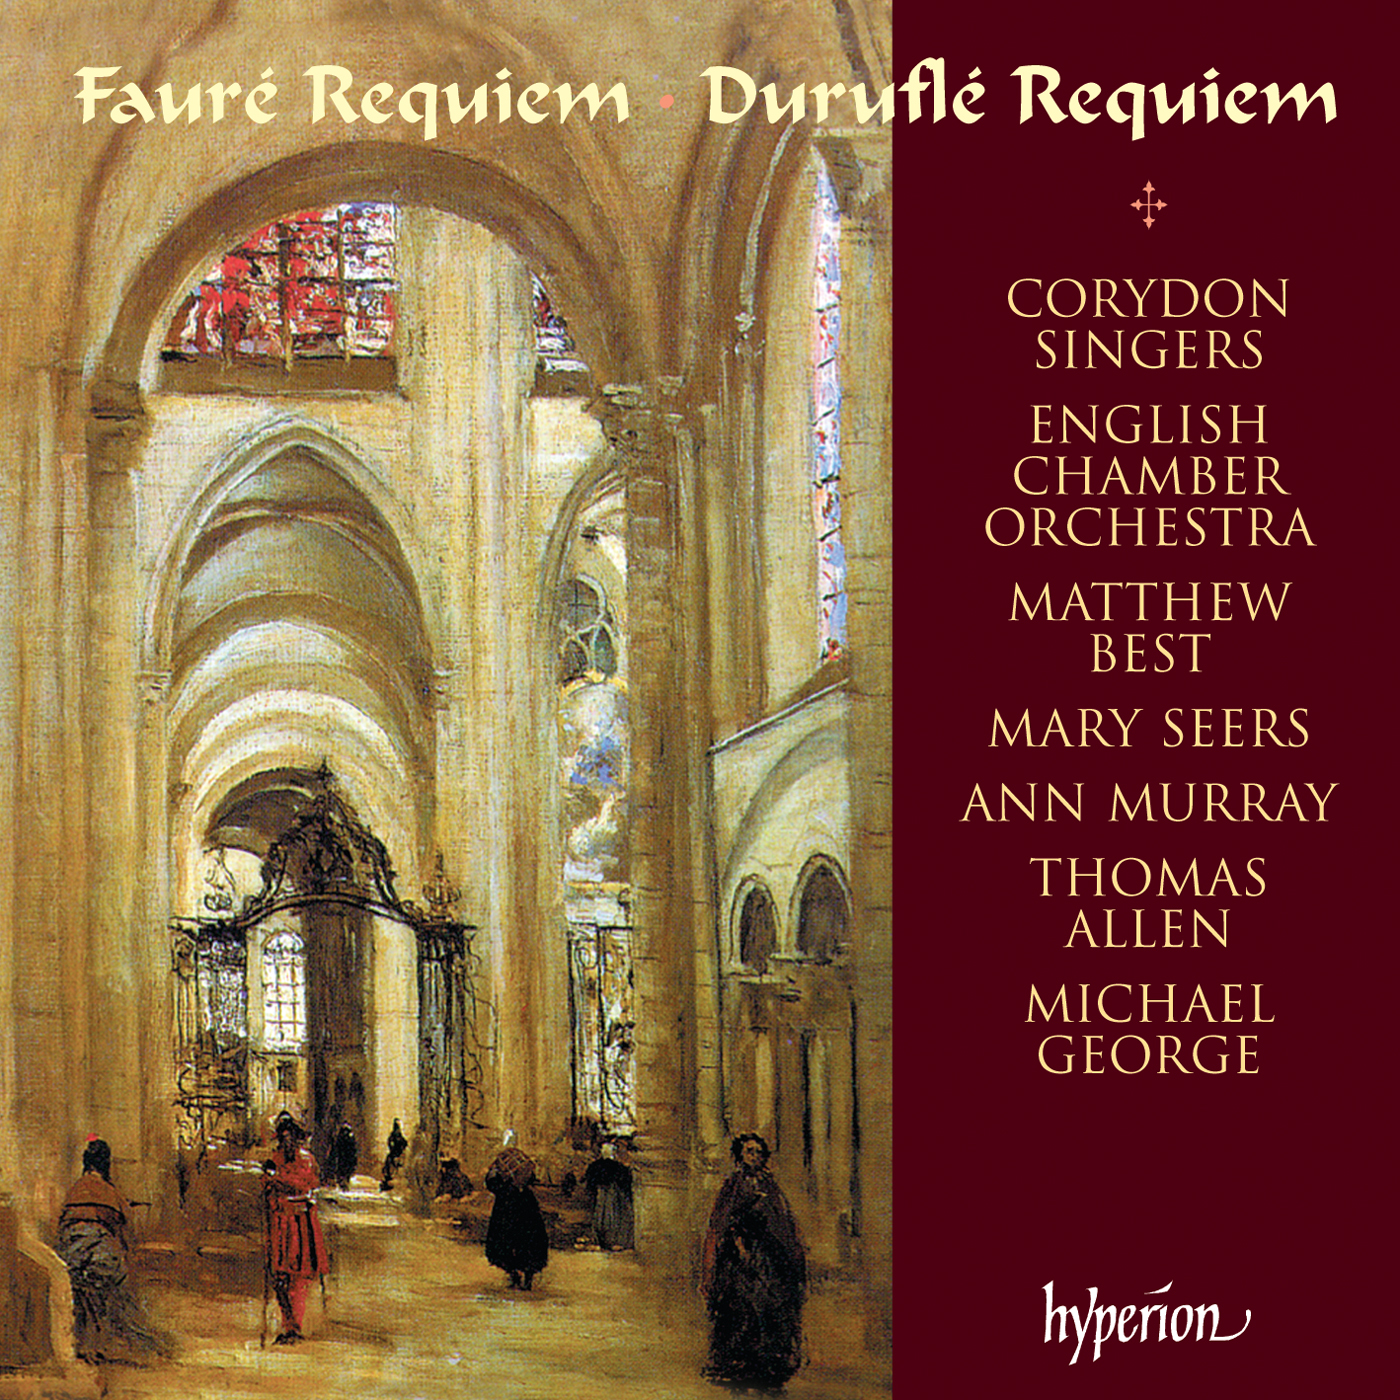 Fauré & Duruflé: Requiem